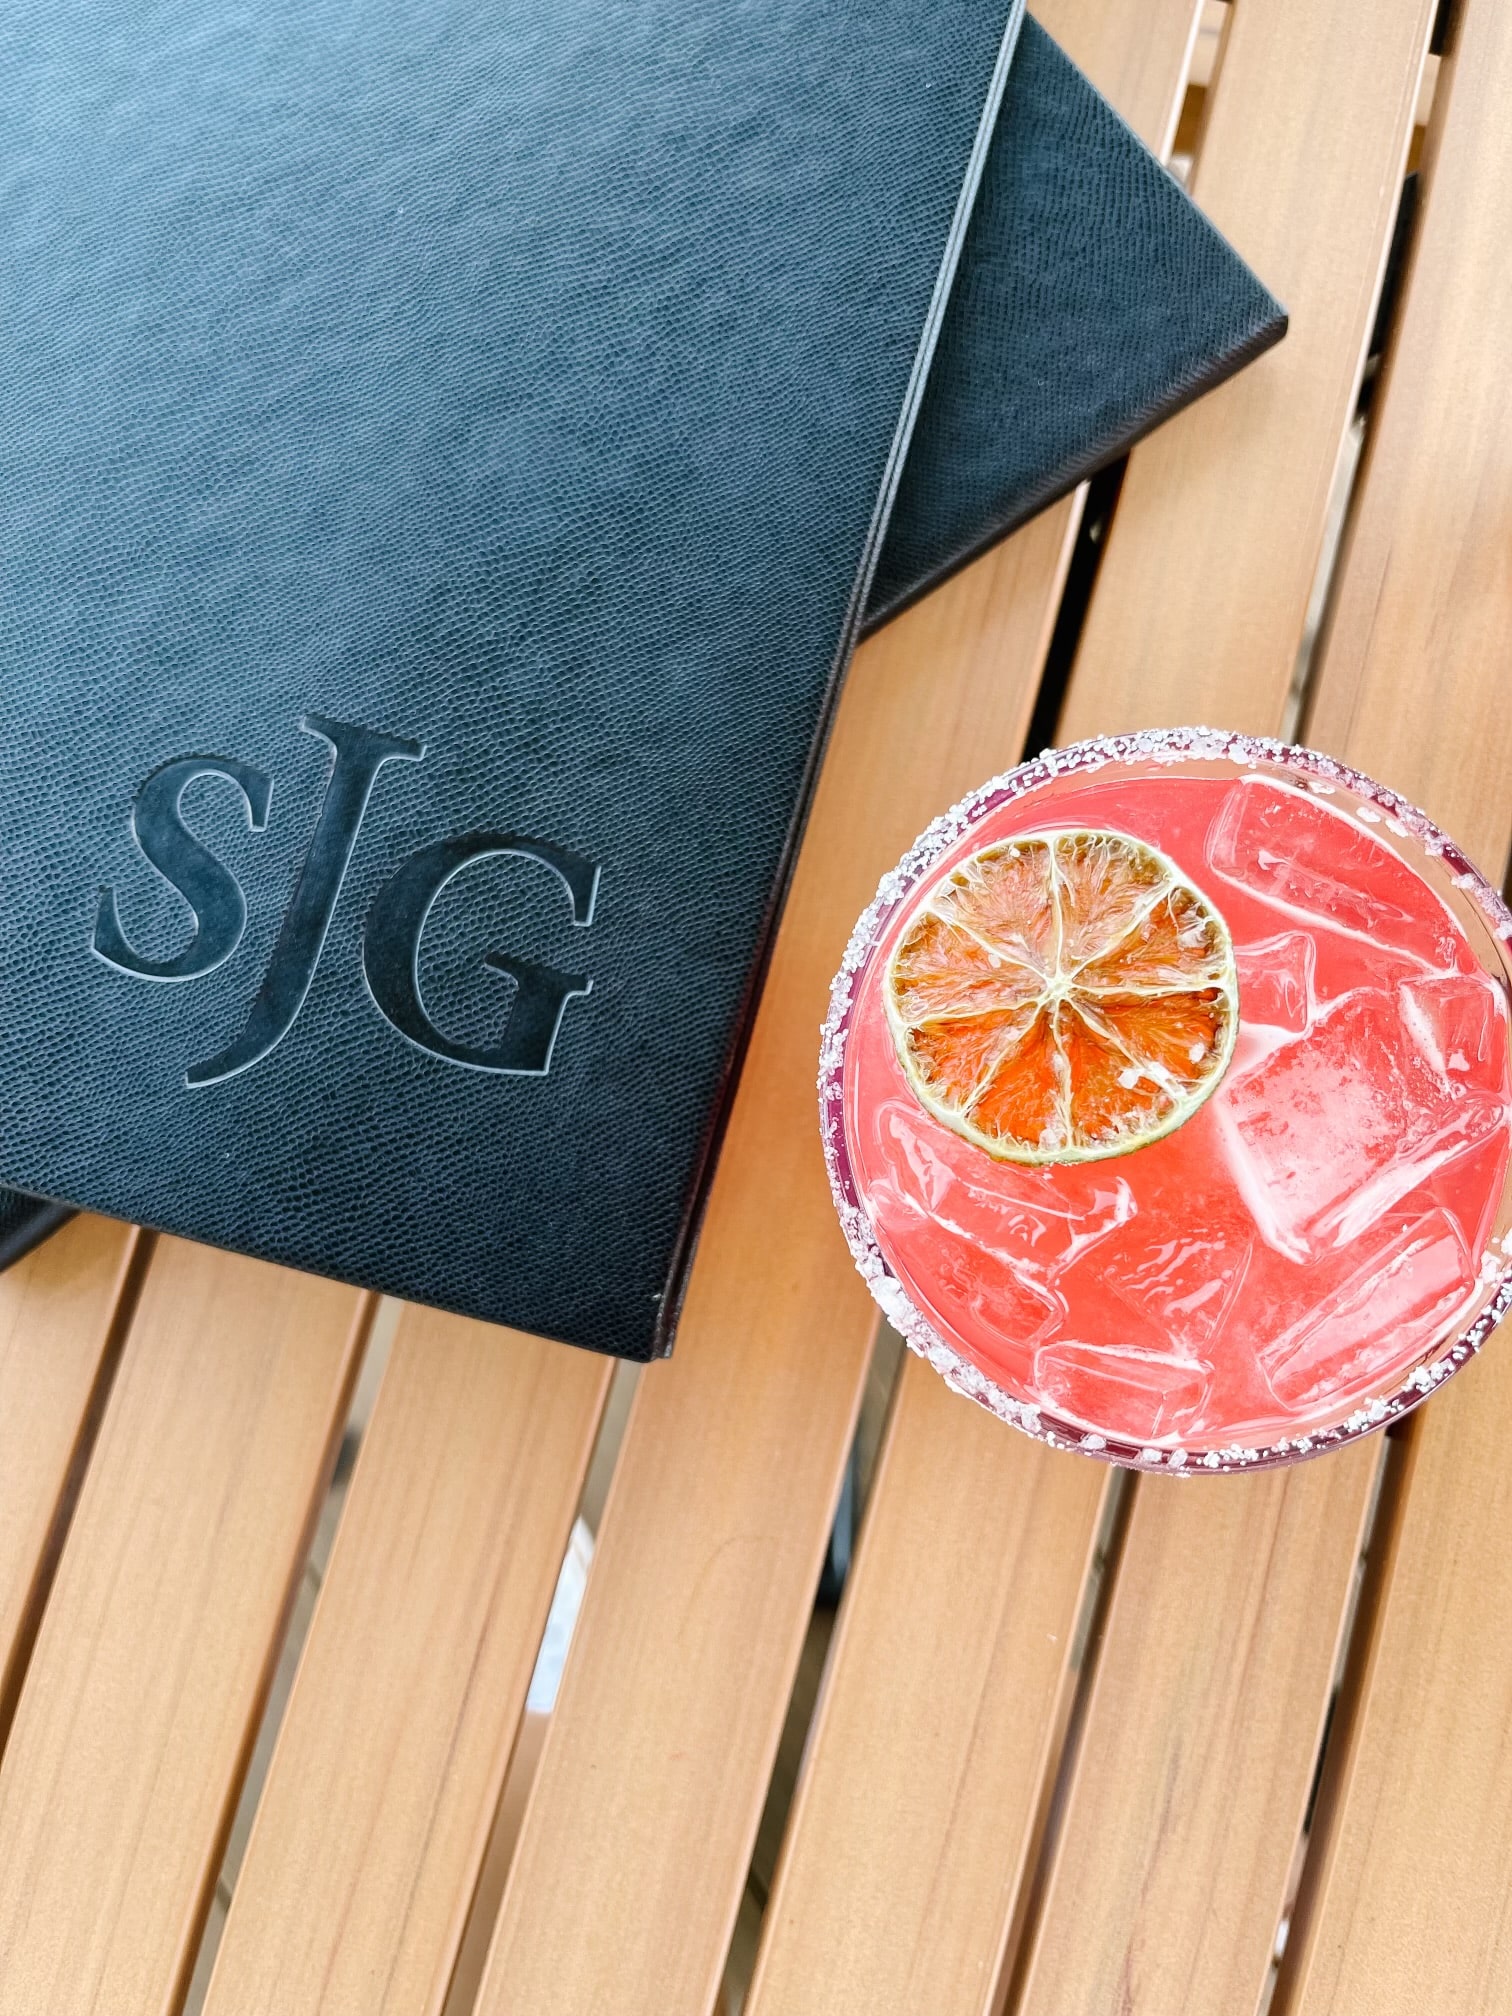 SJG - Restaurant - Drinks